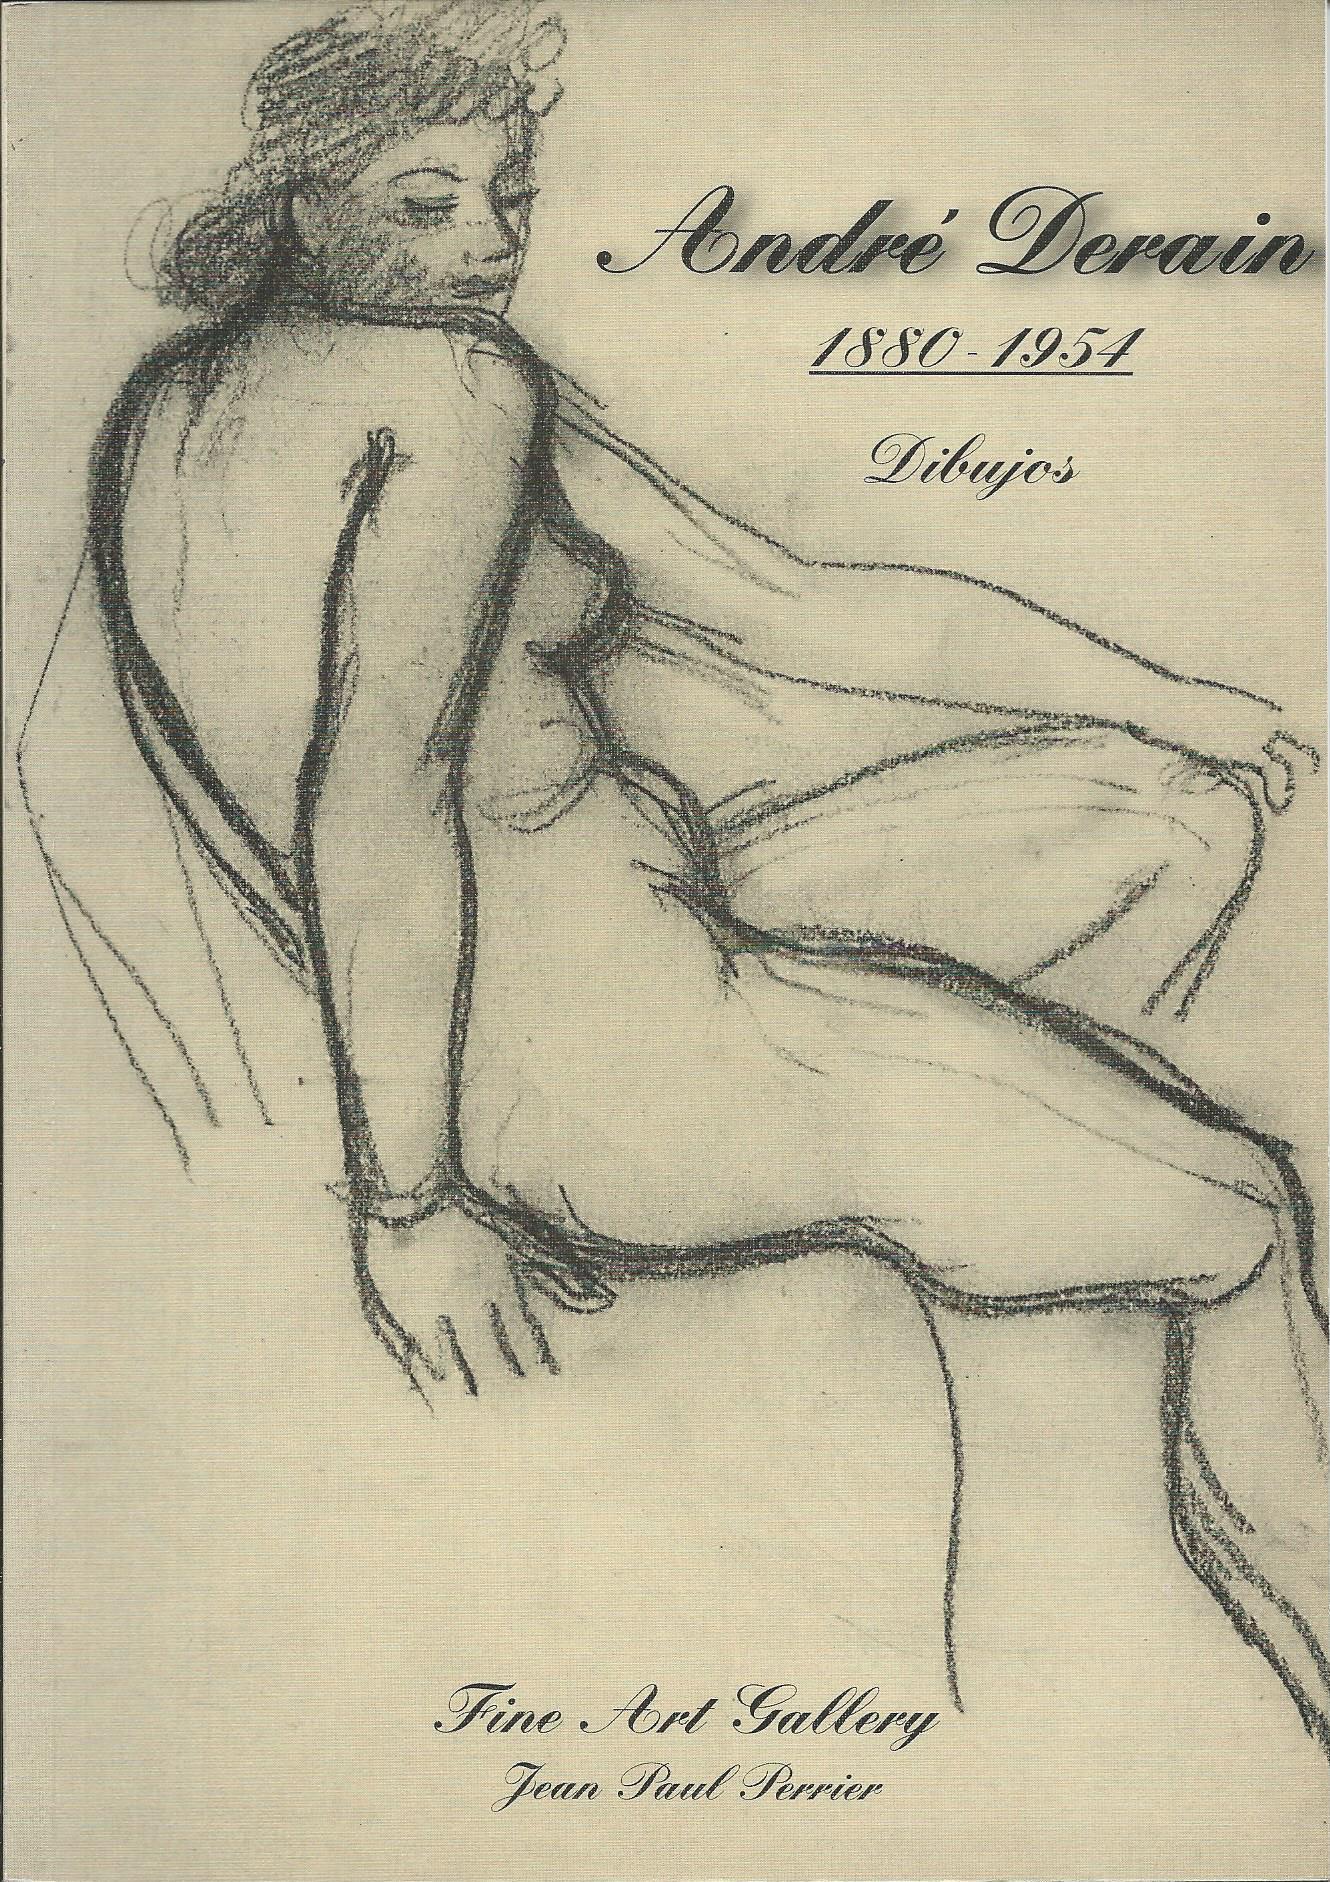  profil gesicht. original bleistiftzeichnung malerei
André Derain (Chatou, 10. Juni 1880 - Garches, 8. September 1954) war ein französischer Maler, Illustrator und Bühnenbildner und Vertreter des Fauvismus.

Derain trat mit achtzehn Jahren in die